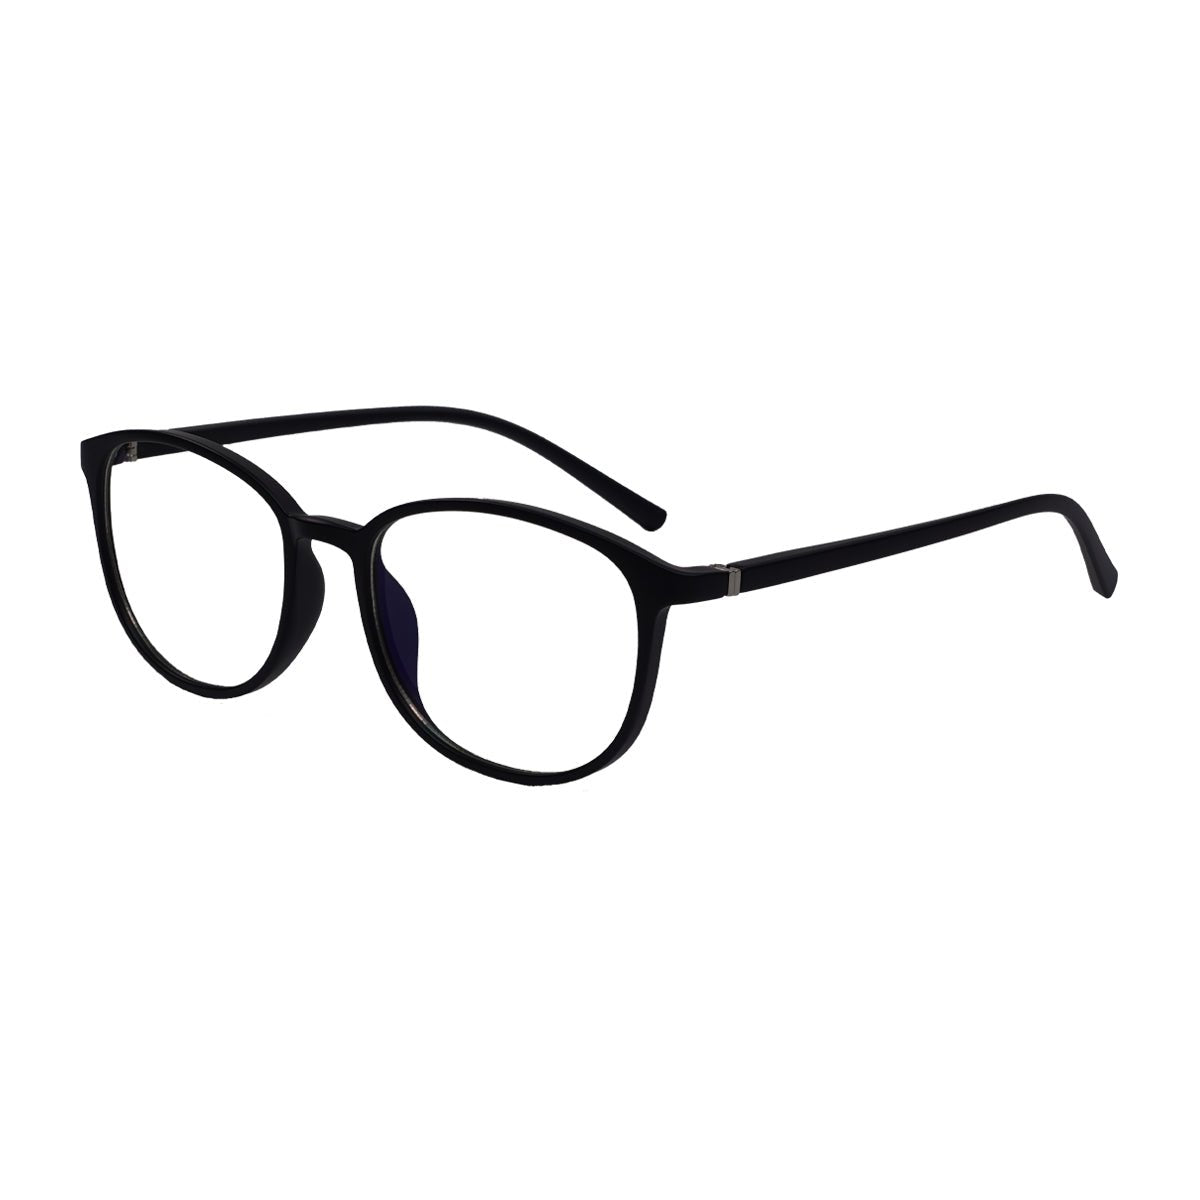 Epic Gamers Glasses V2 - Matte Black - Store 974 | ستور ٩٧٤